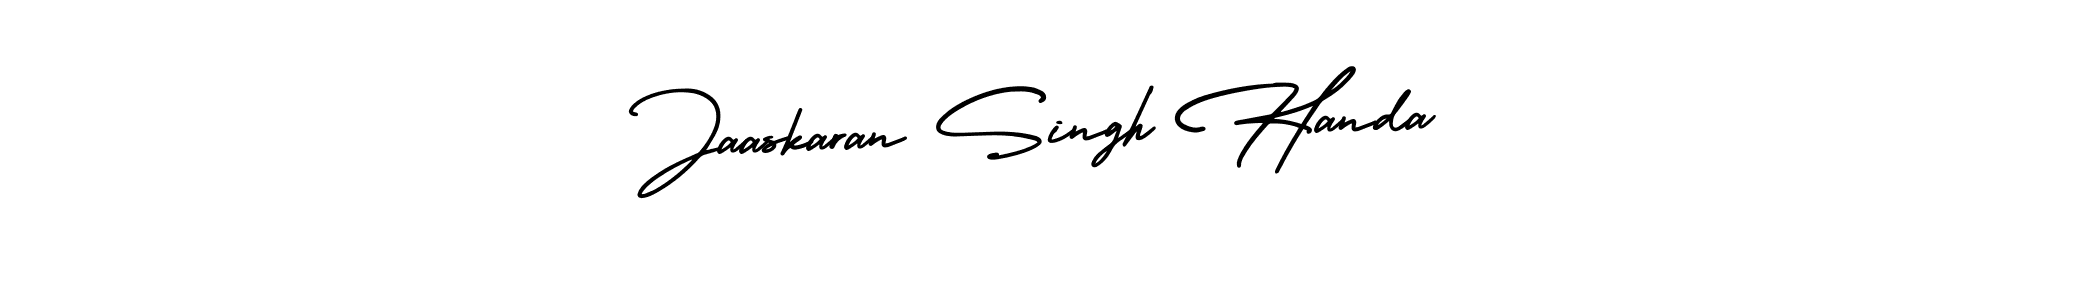 Best and Professional Signature Style for Jaaskaran Singh Handa. AmerikaSignatureDemo-Regular Best Signature Style Collection. Jaaskaran Singh Handa signature style 3 images and pictures png